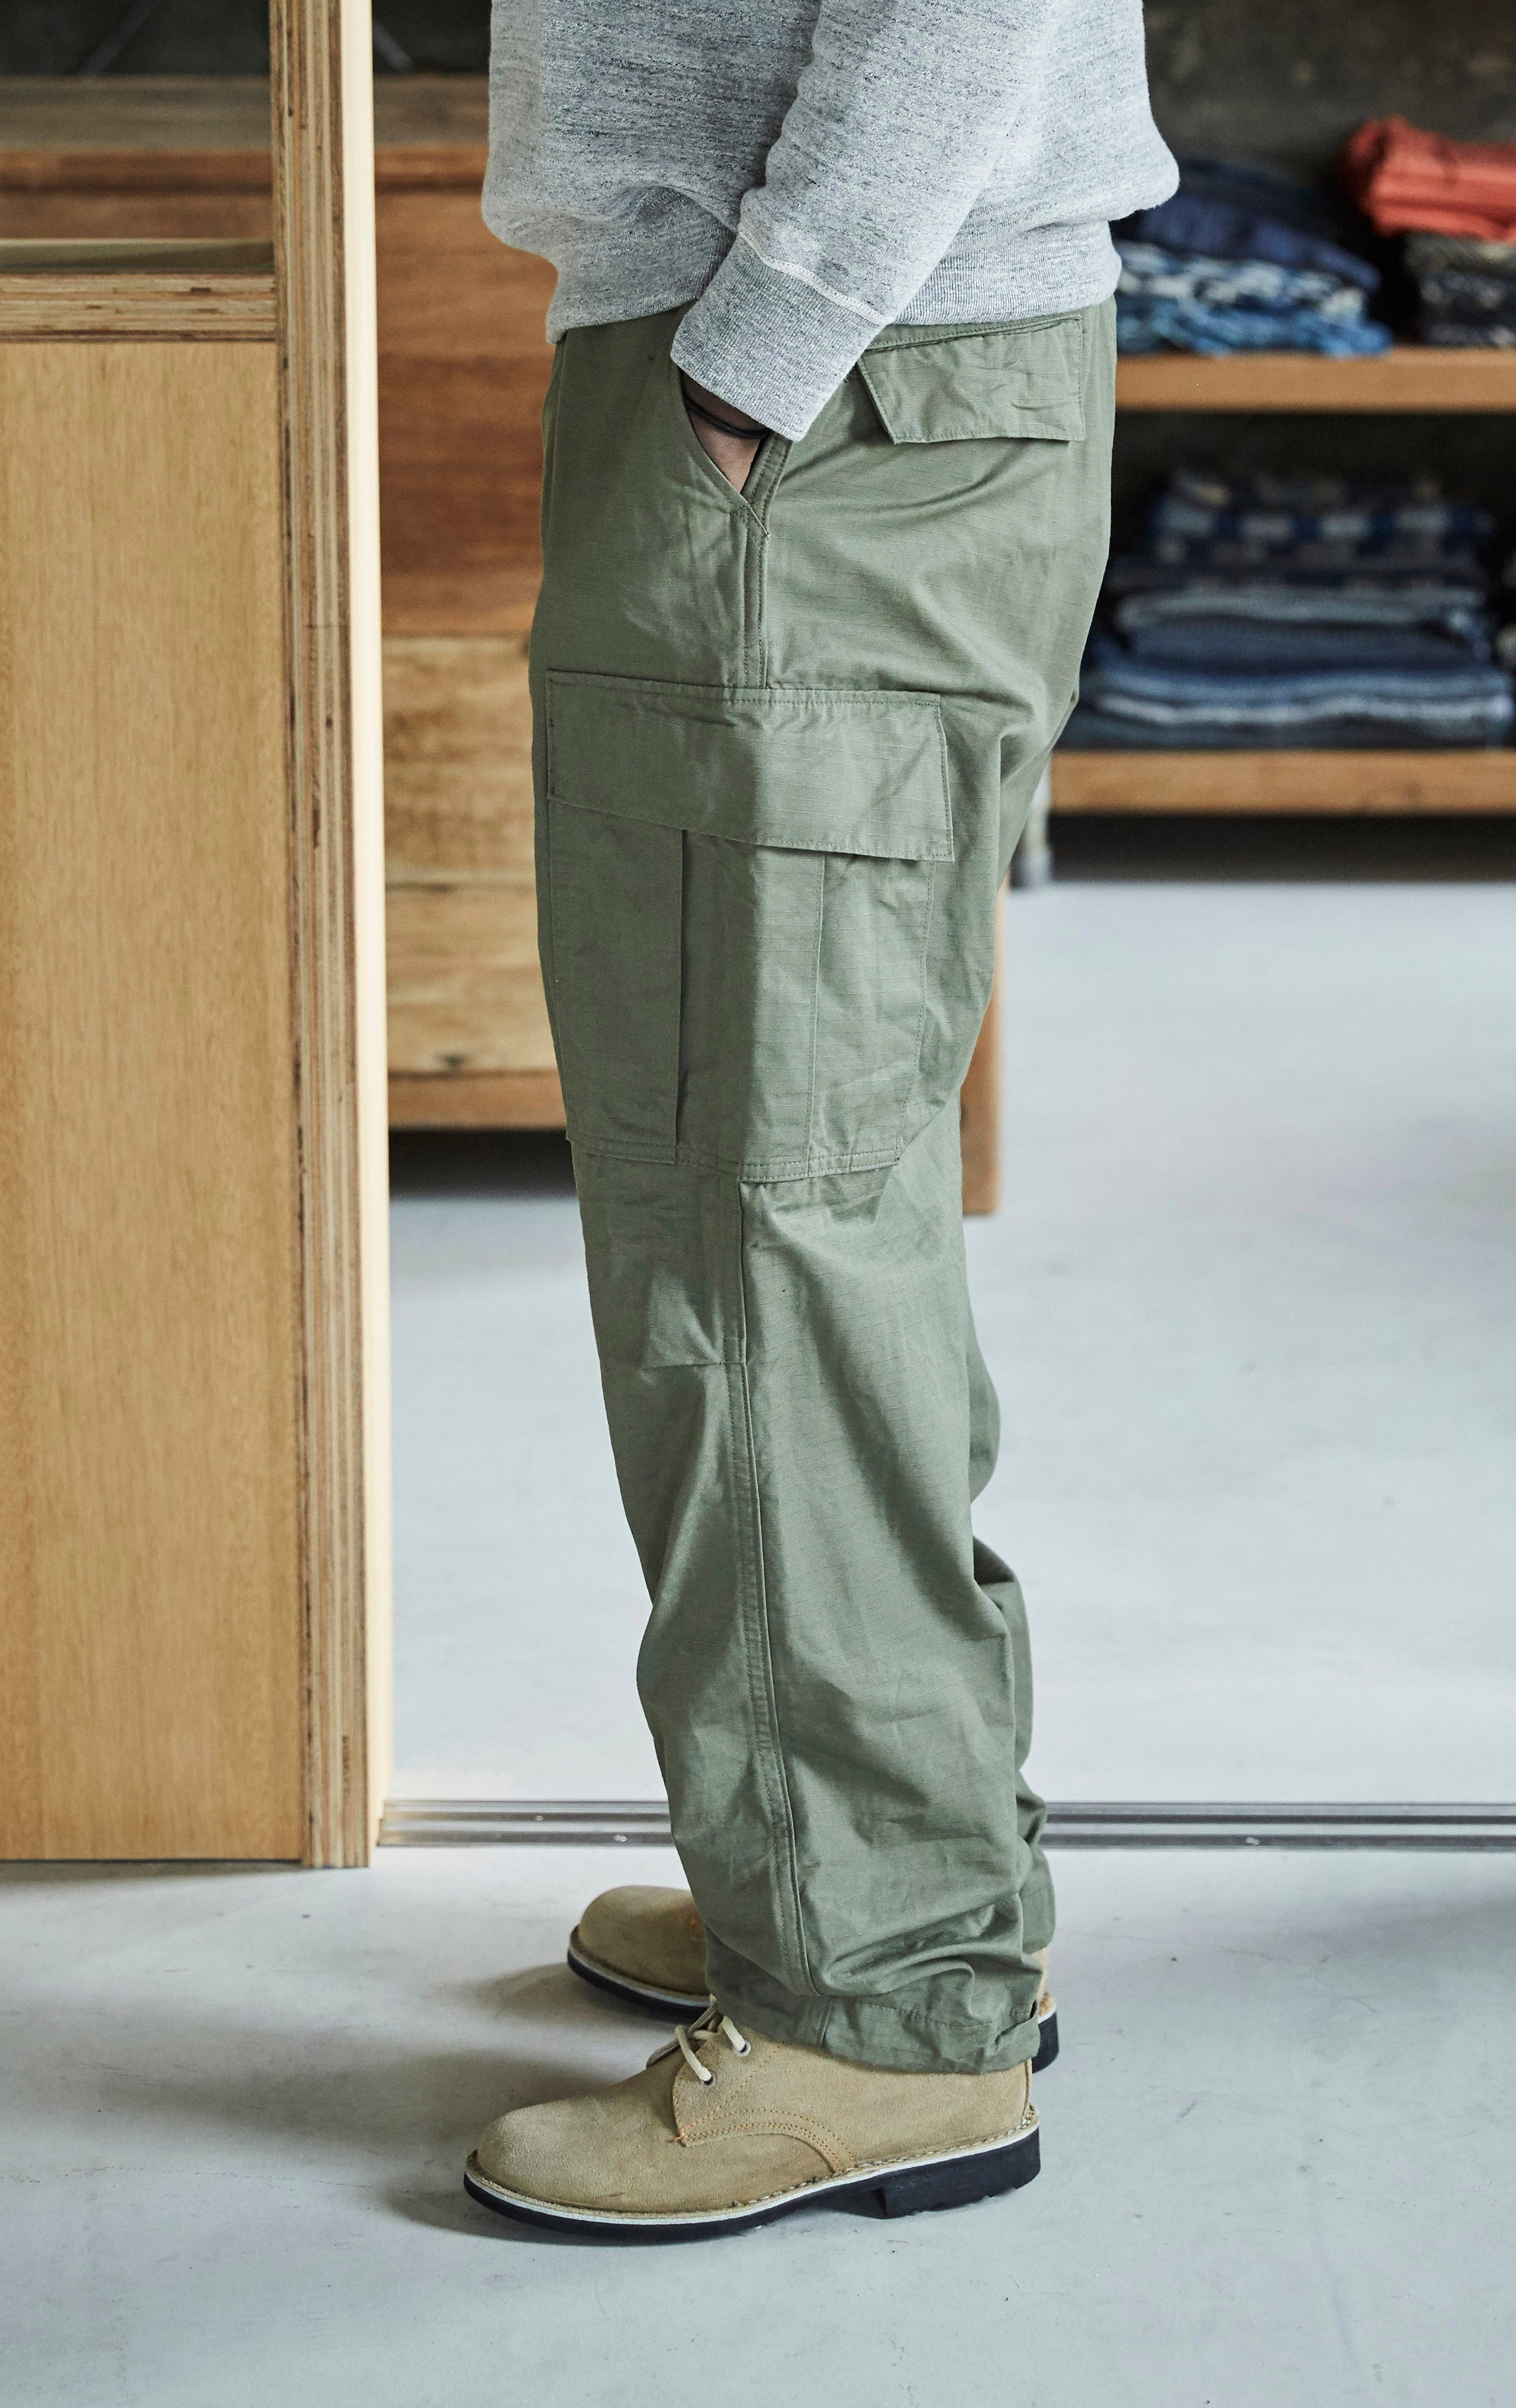 販促通販vintage PEARLYGATES cargo pants gimmick パンツ